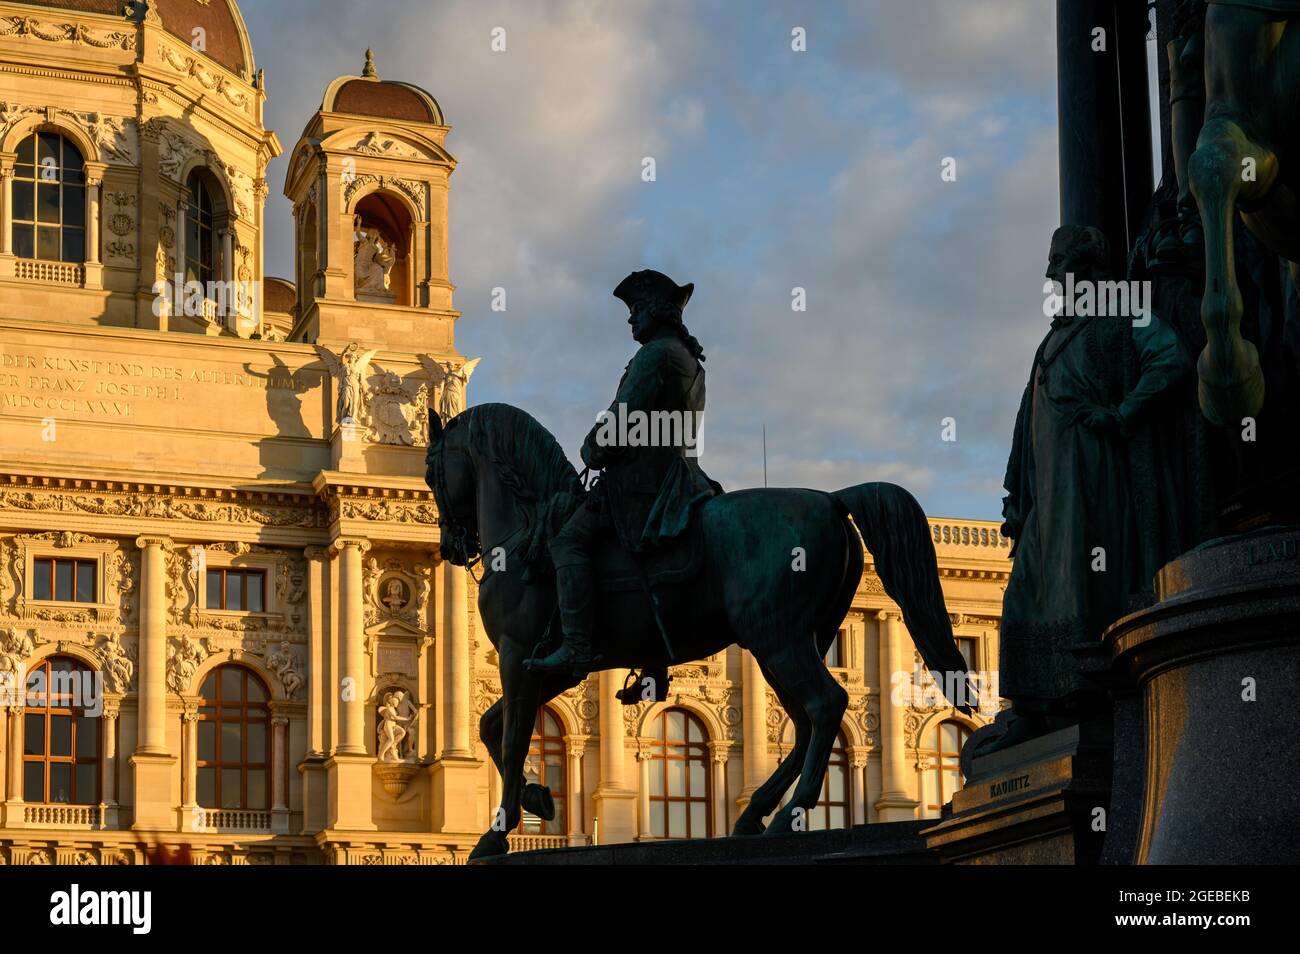 Une statue de cavalier au monument Maria Theresa, Vienne, Autriche Banque D'Images